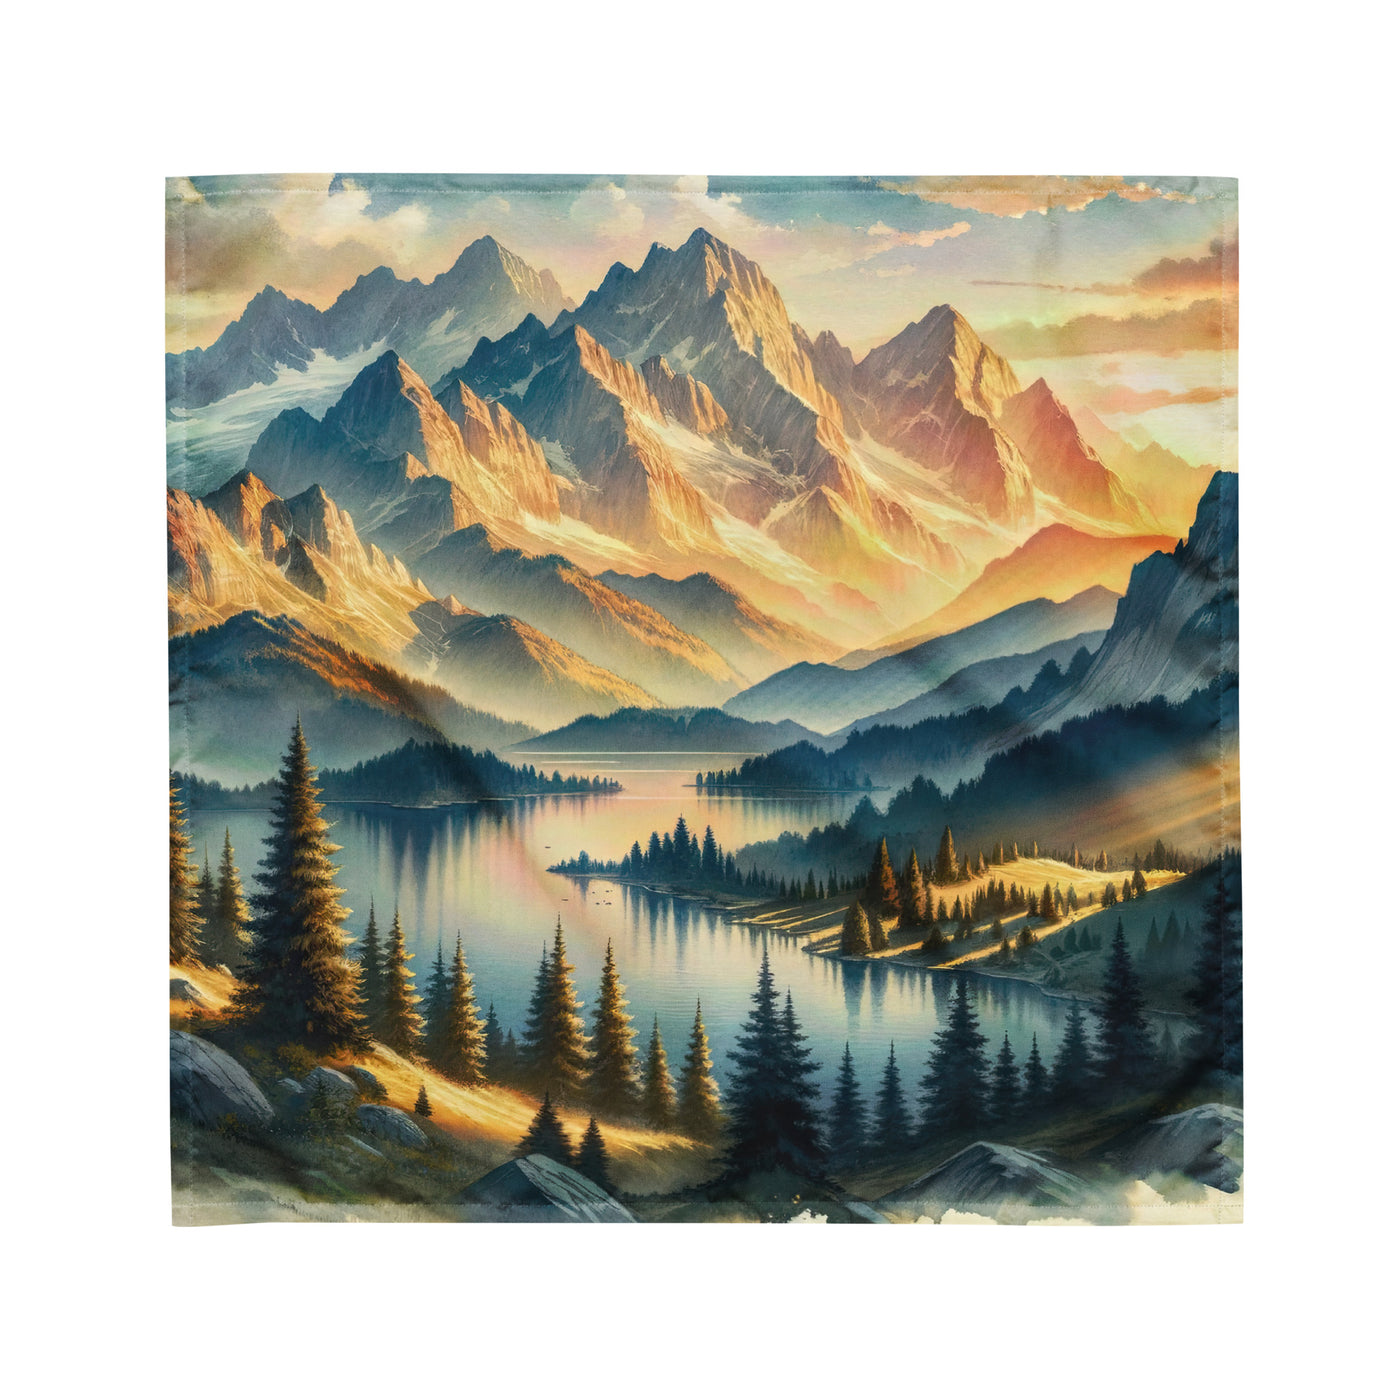 Aquarell der Alpenpracht bei Sonnenuntergang, Berge im goldenen Licht - Bandana (All-Over Print) berge xxx yyy zzz M